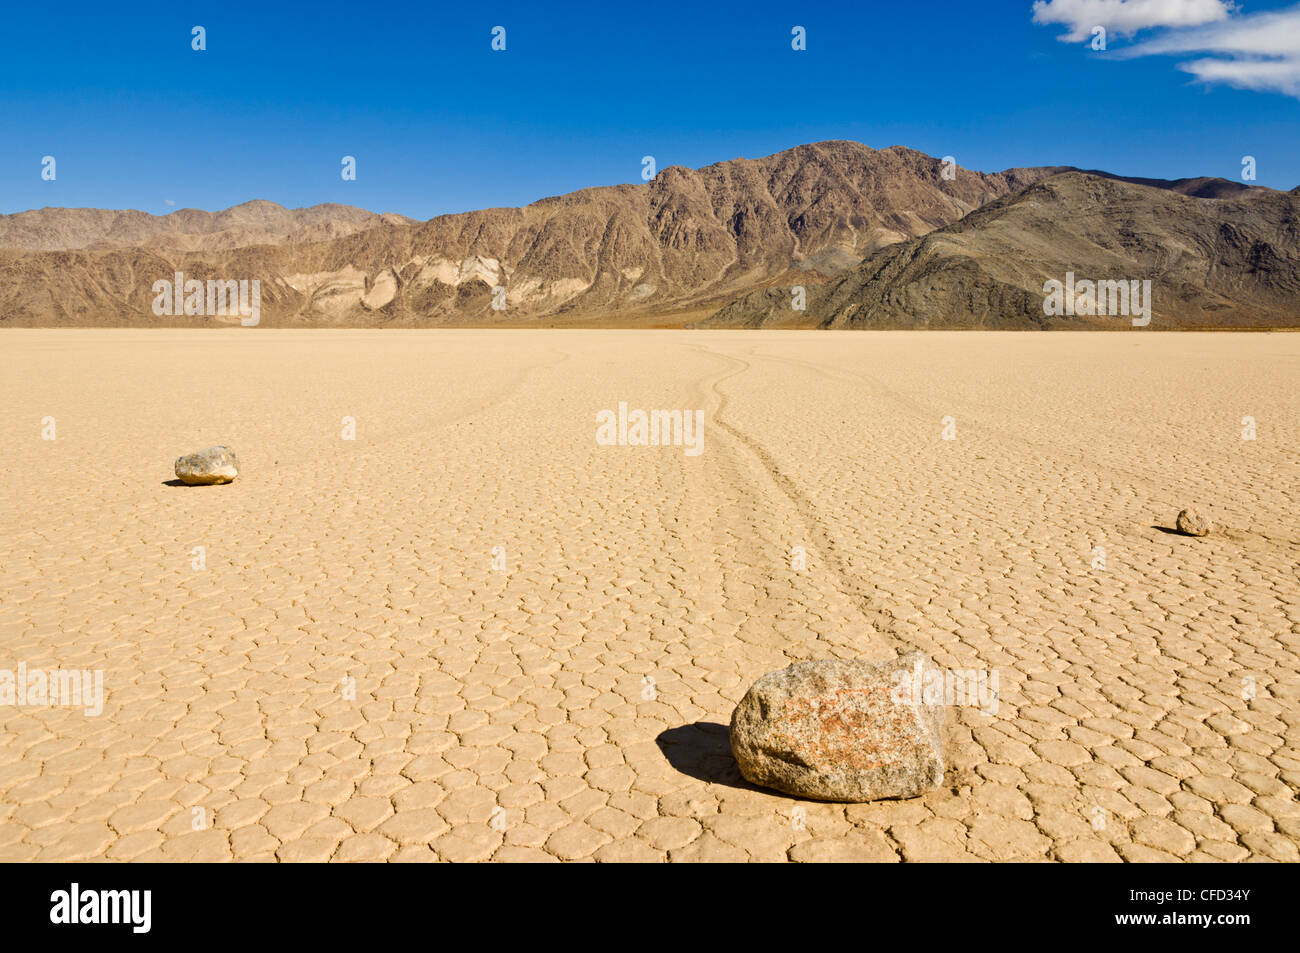 Die Tribüne im Tal Racetrack, Death Valley Nationalpark, Kalifornien, USA Stockfoto